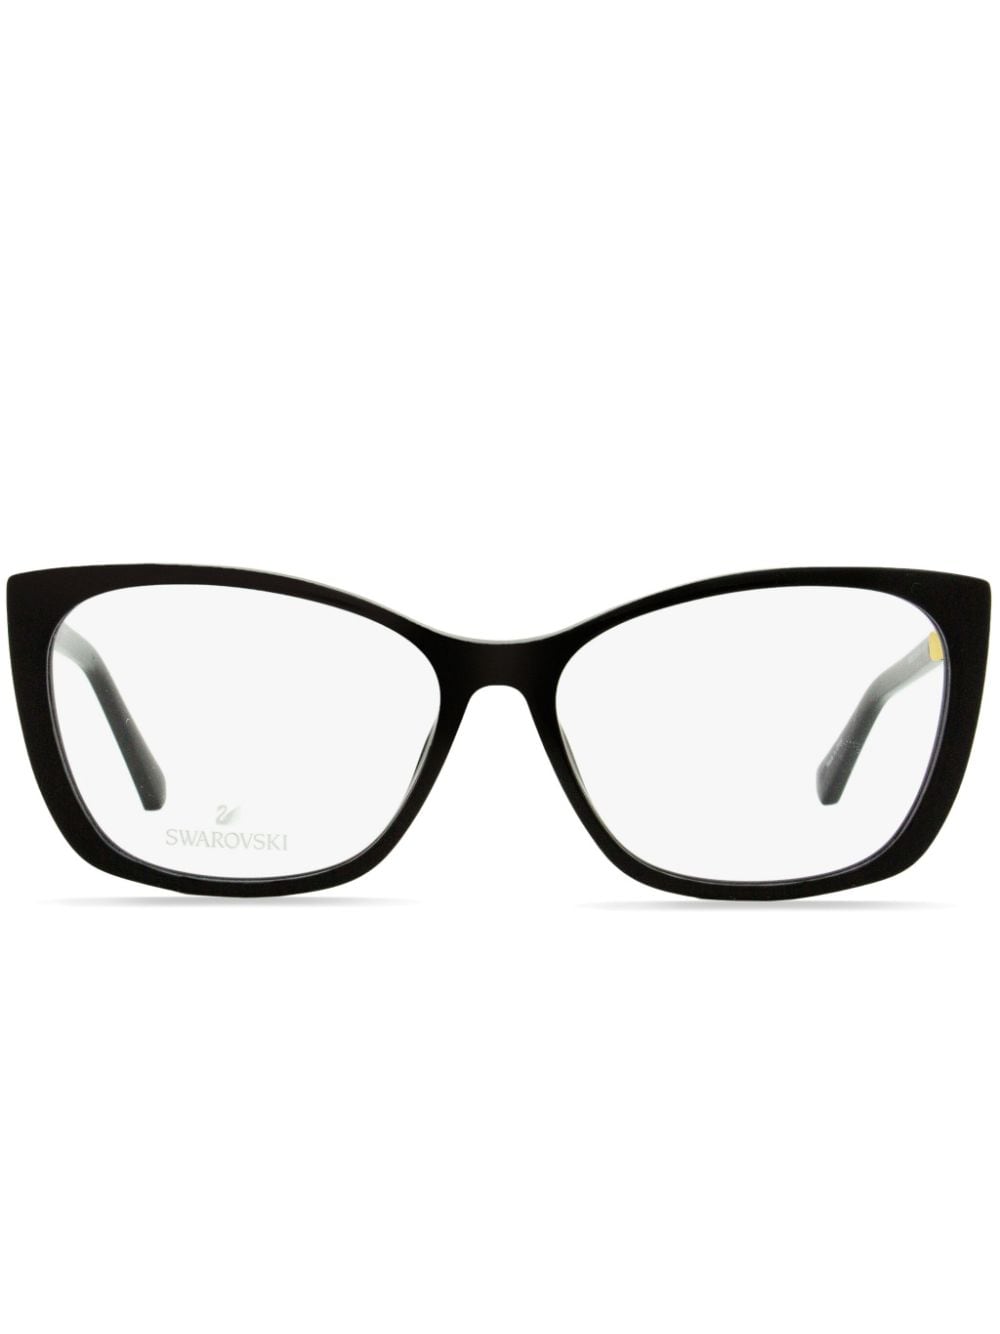 Swarovski 5383 butterfly-frame crystal glasses - Black von Swarovski